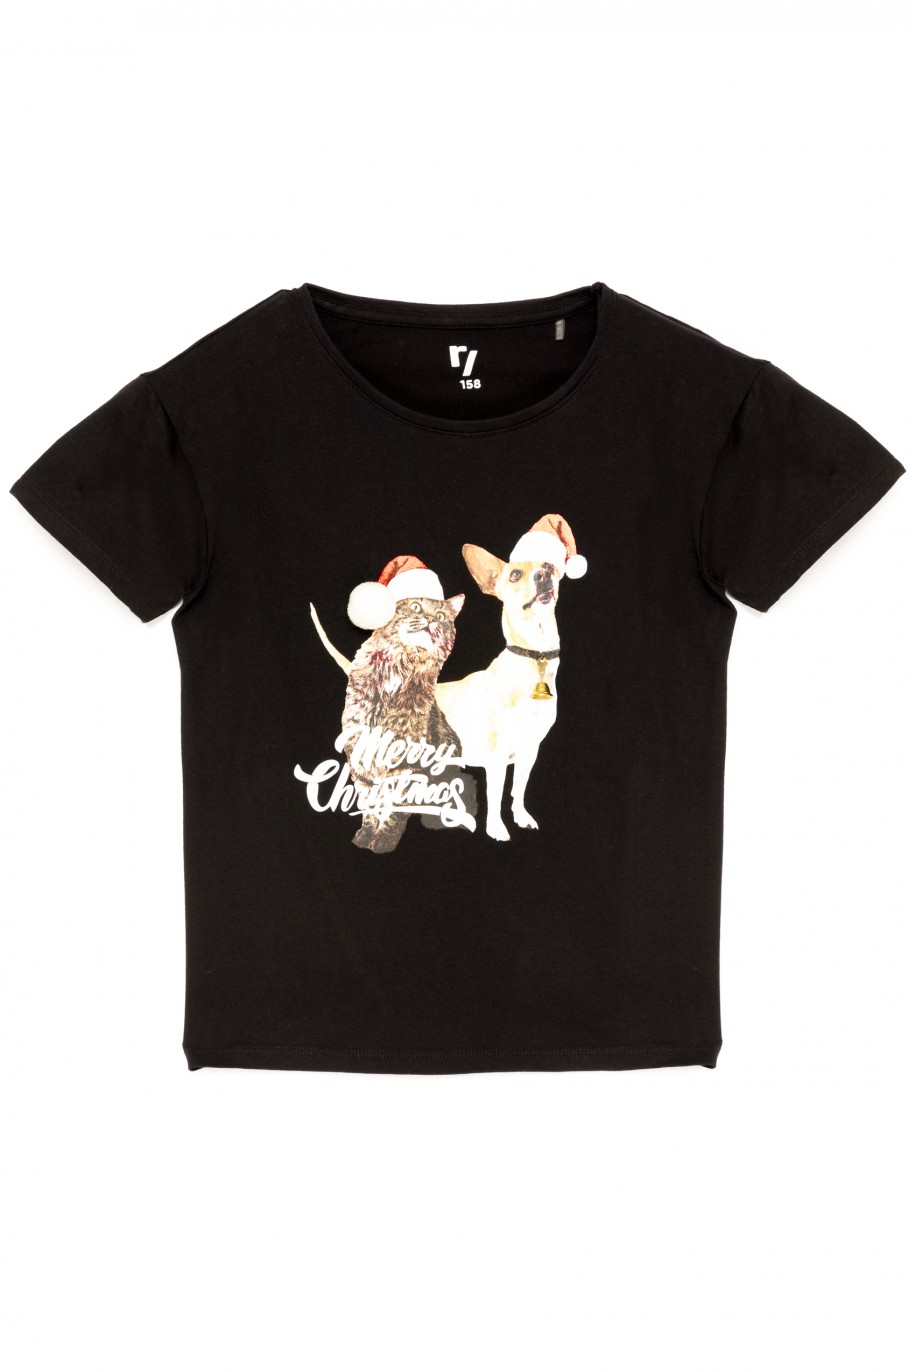 Czarny t-shirt dla dziewczyny DOG CHRISTMAS - 44891